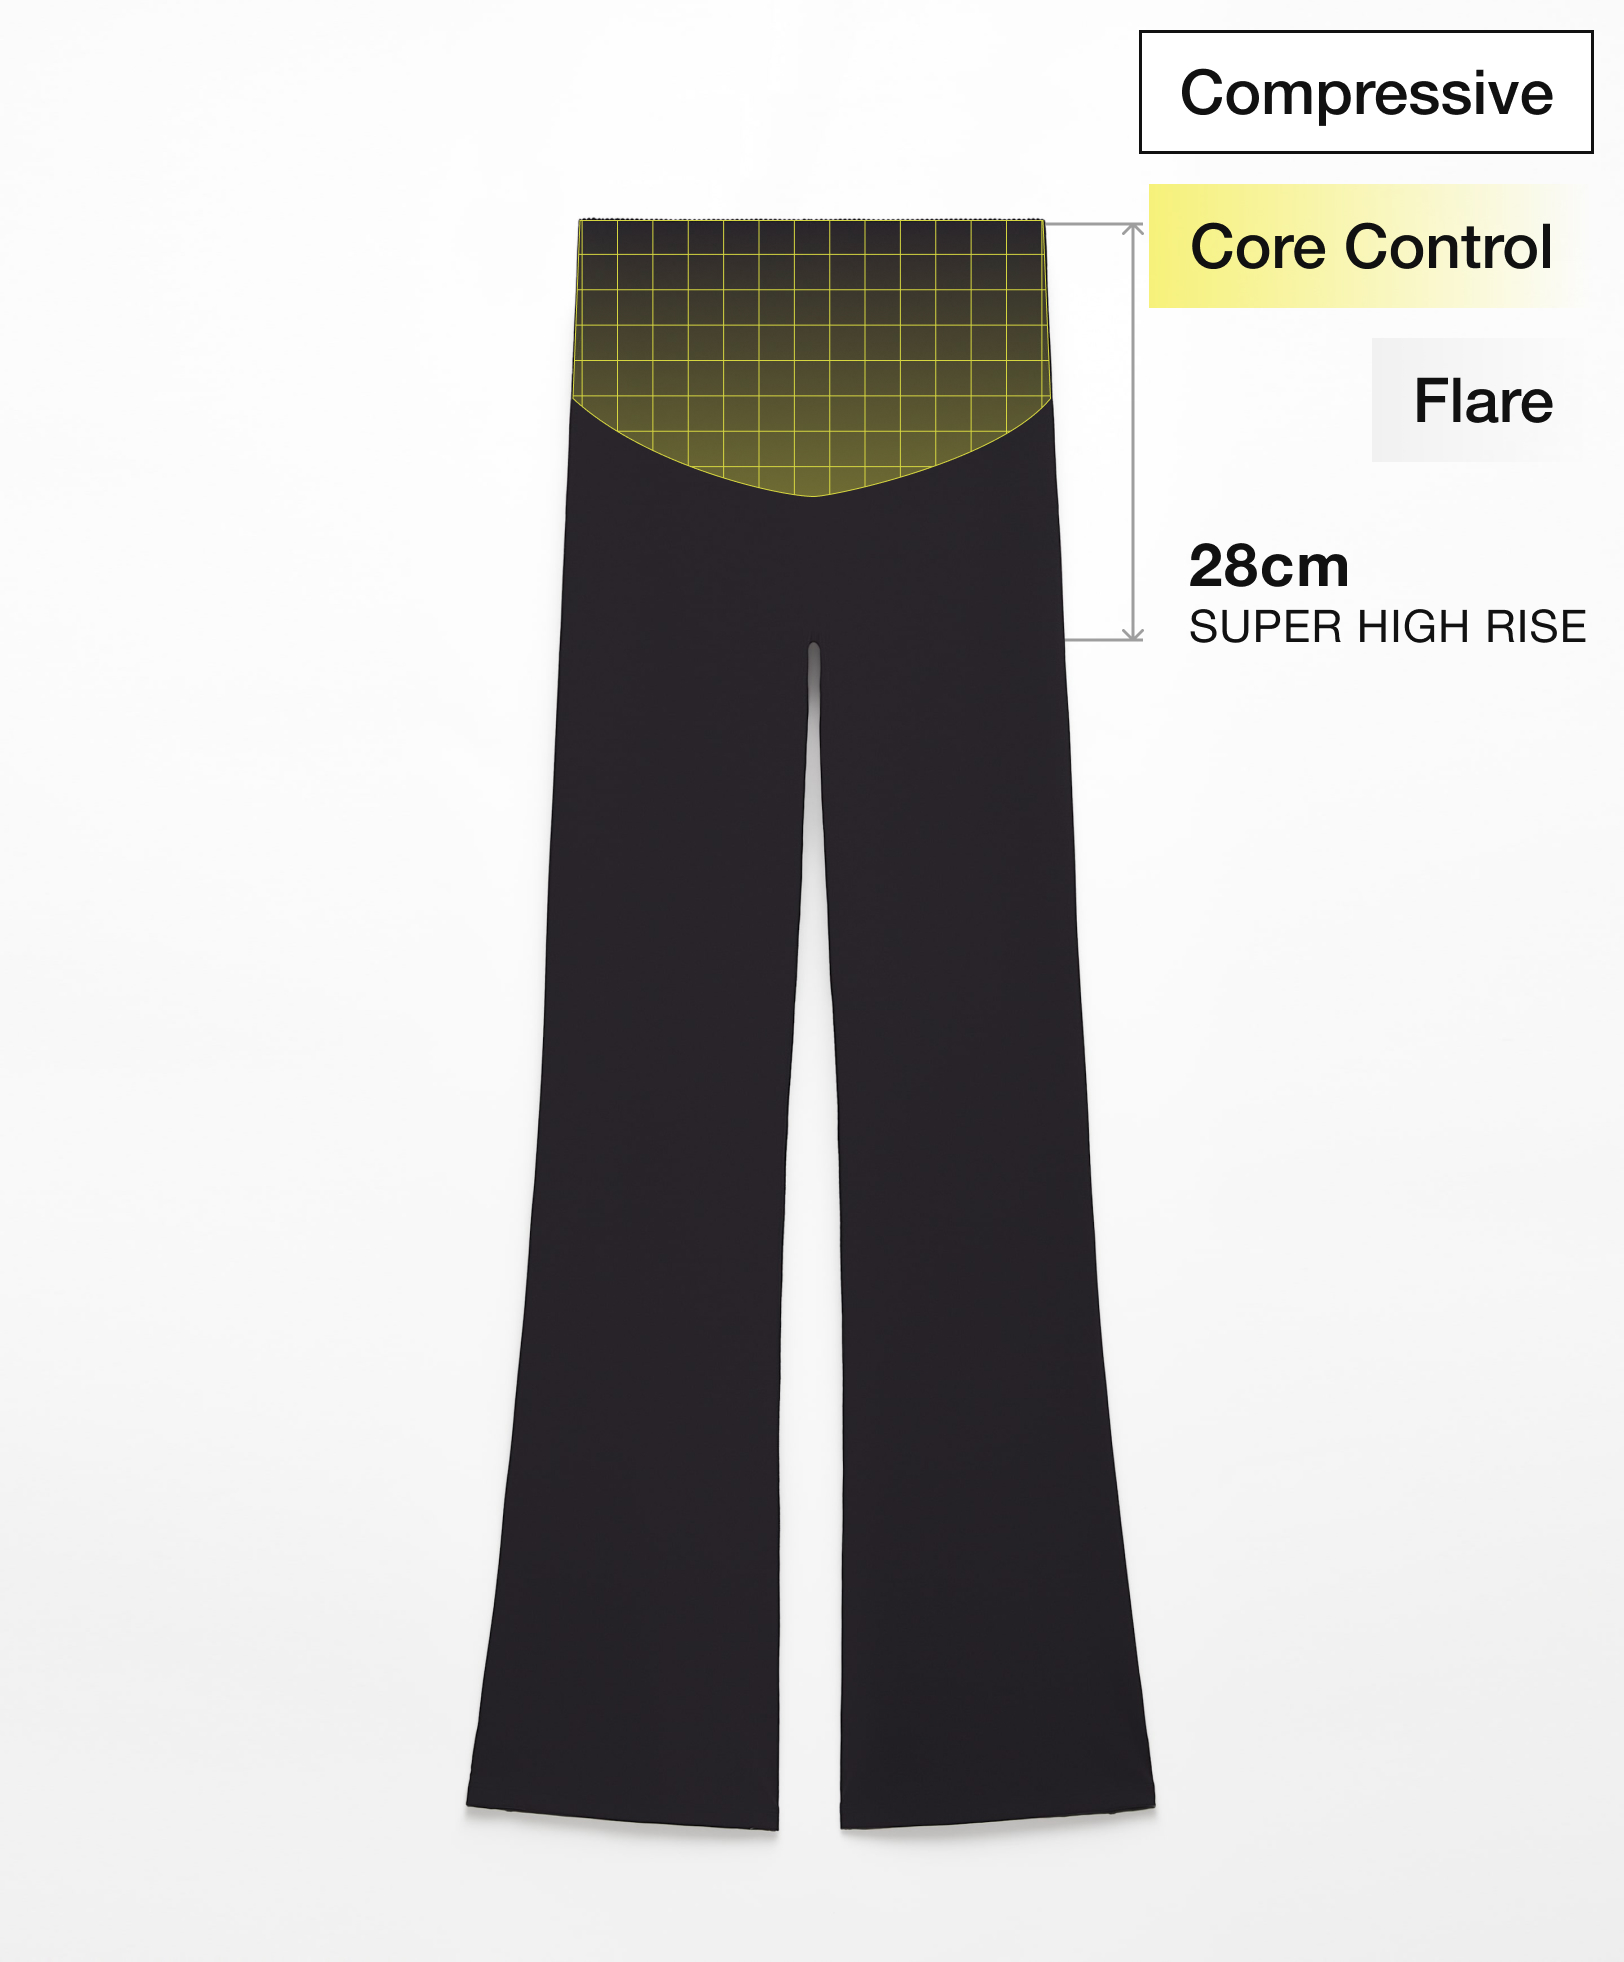 Παντελόνι flare super high rise compressive core control